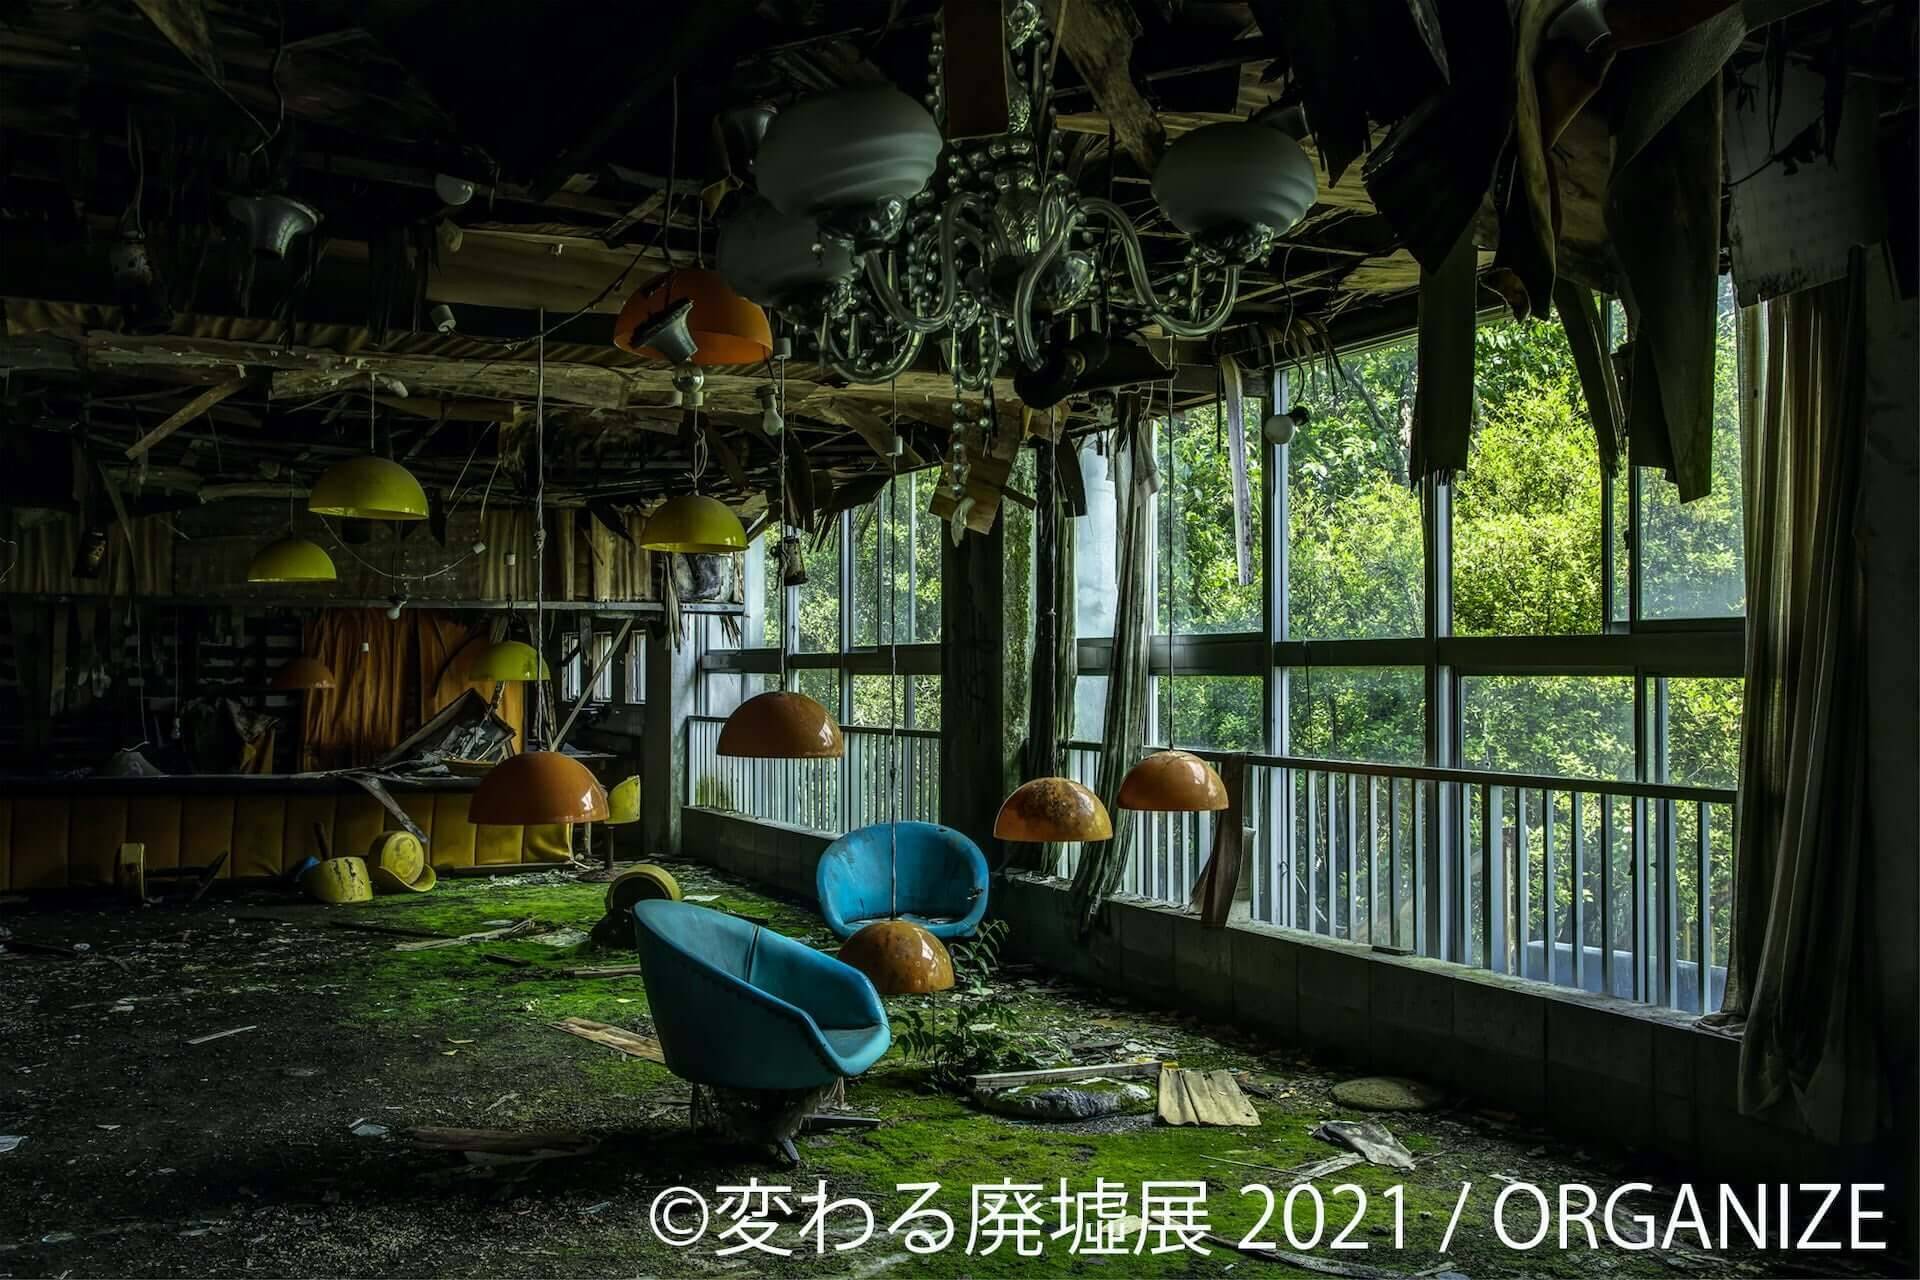 美しい廃墟の合同写真展 変わる廃墟展 21 が東京 名古屋で開催決定 未公開の廃墟動画も放映 21年3月3日 エキサイトニュース